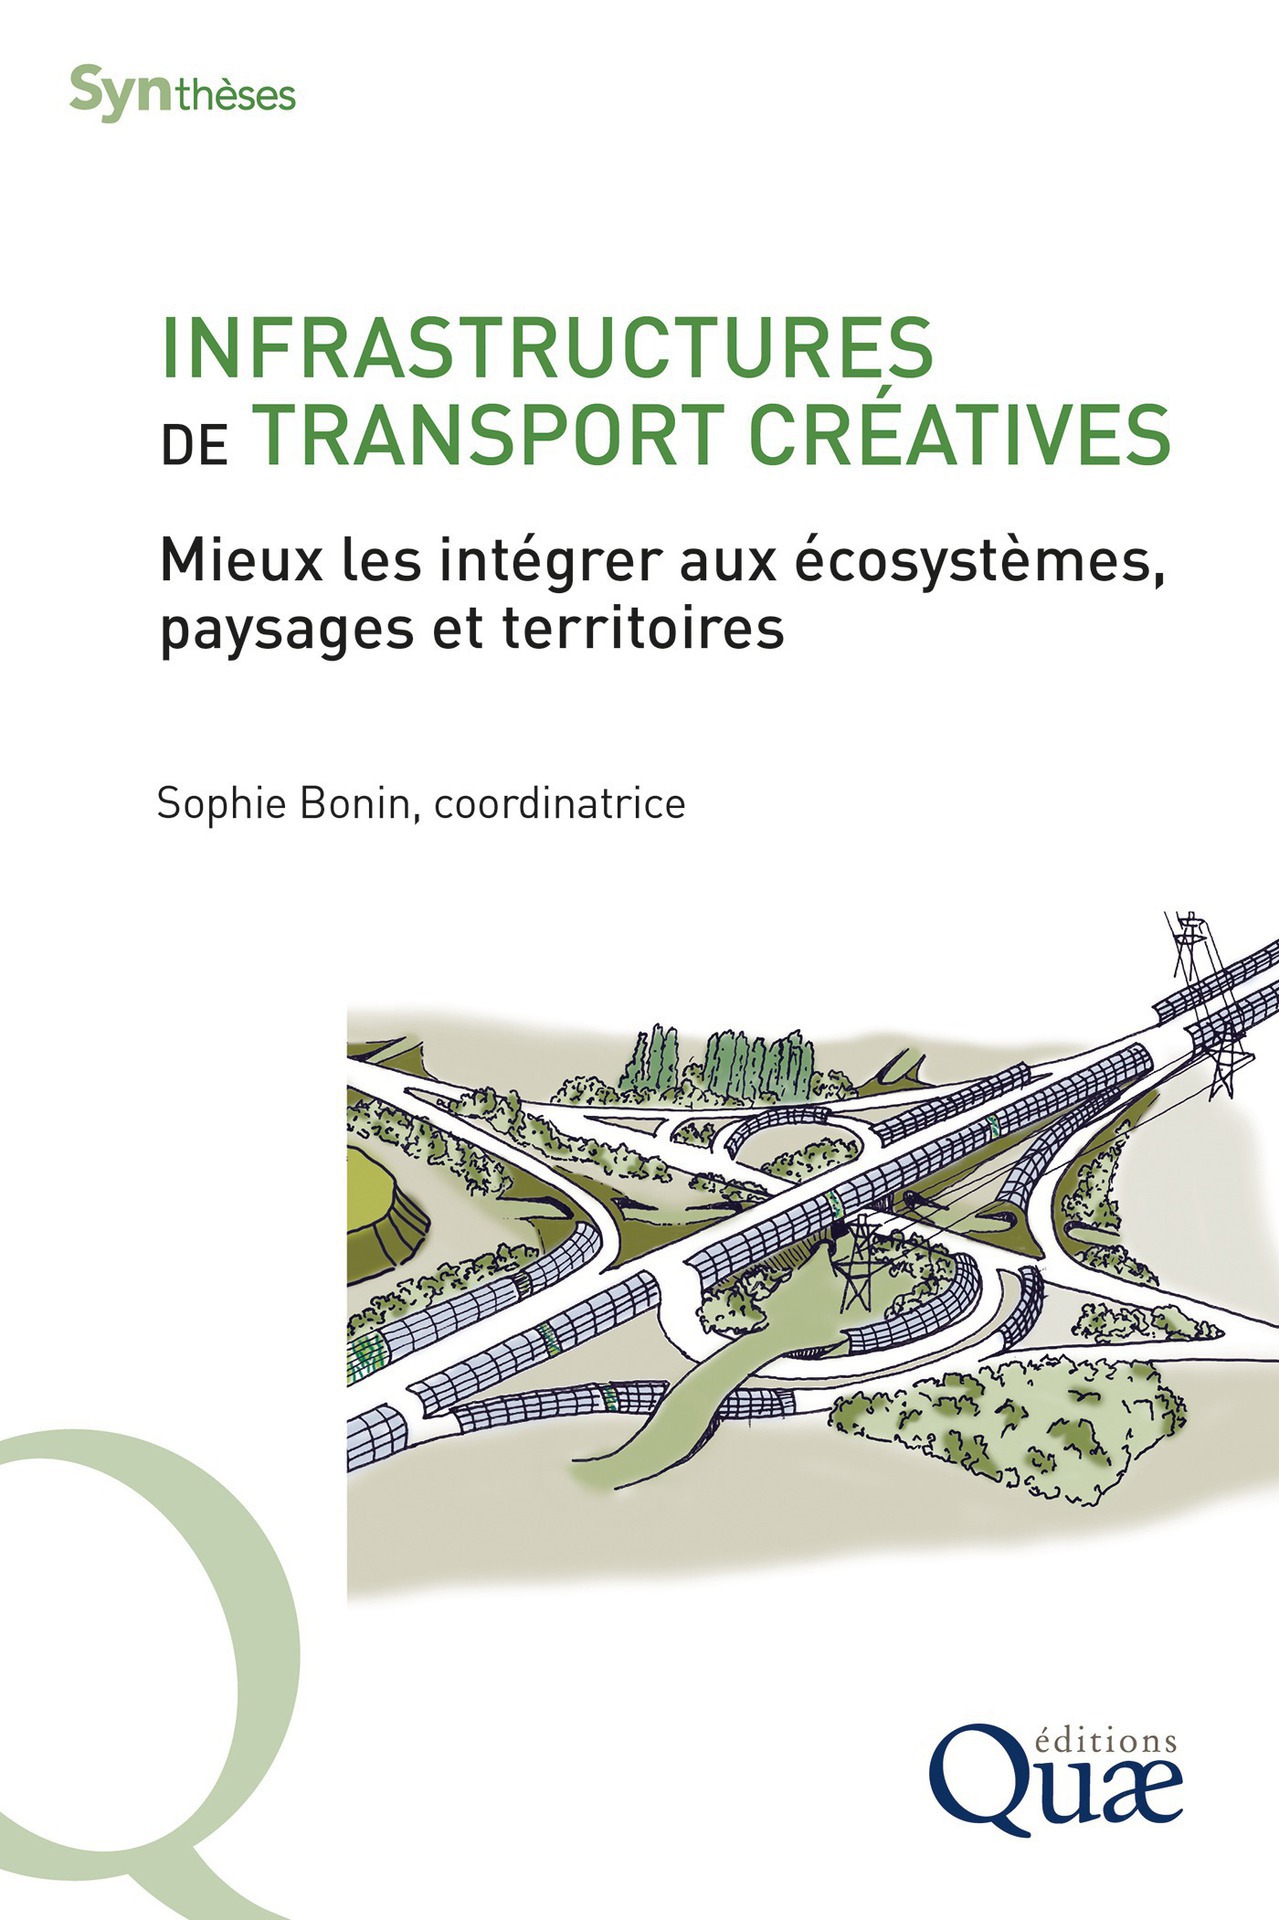 Image Infrastructures de transport créatives : mieux les intégrer aux écosystèmes, paysages et territoires